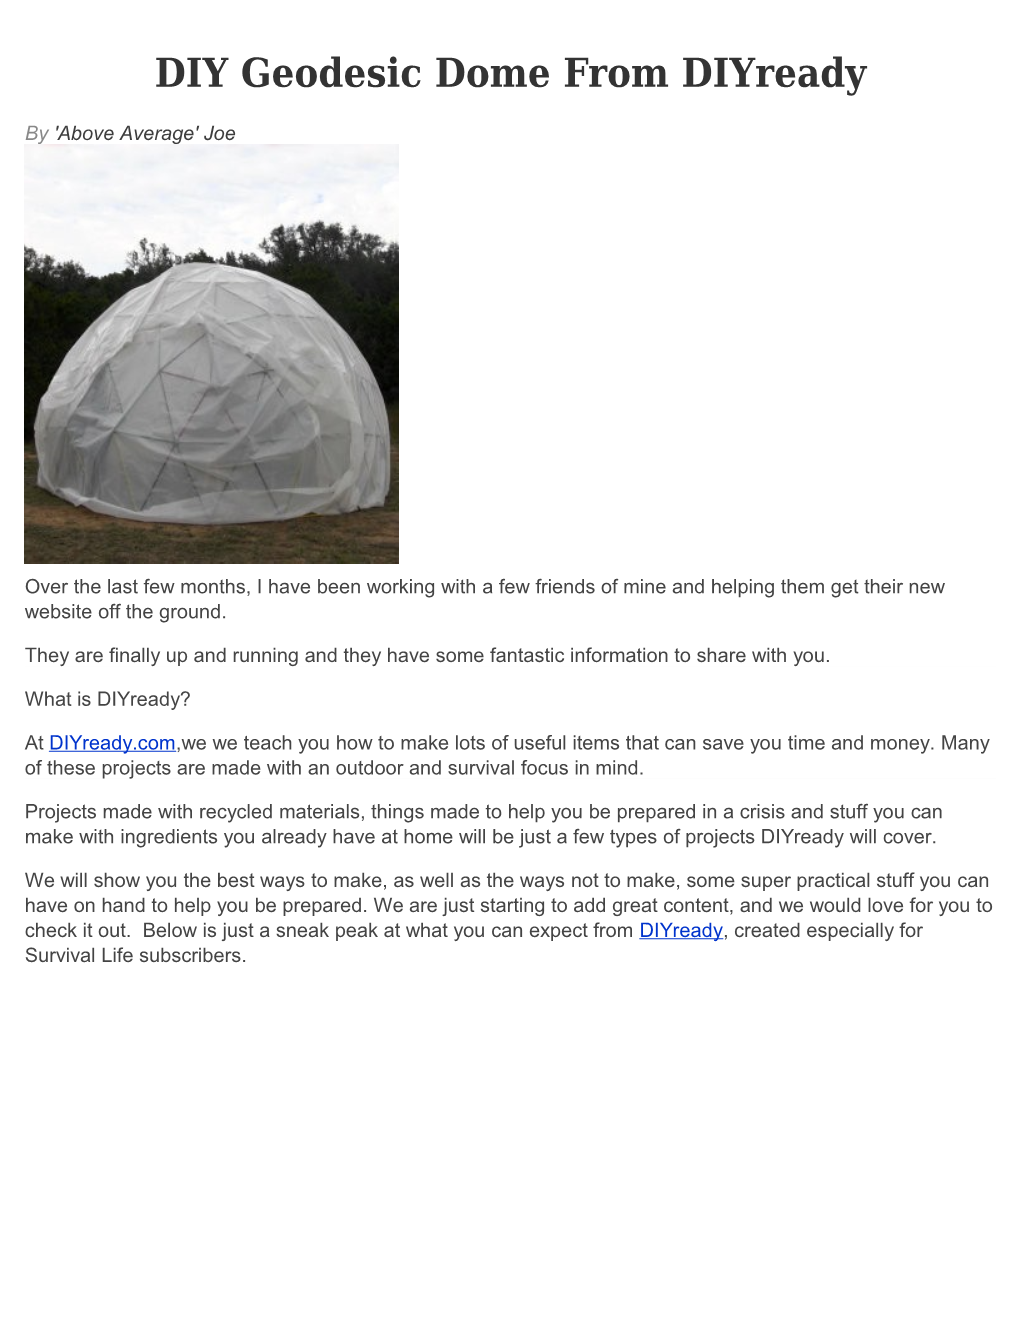 DIY Geodesic Dome Fromdiyready